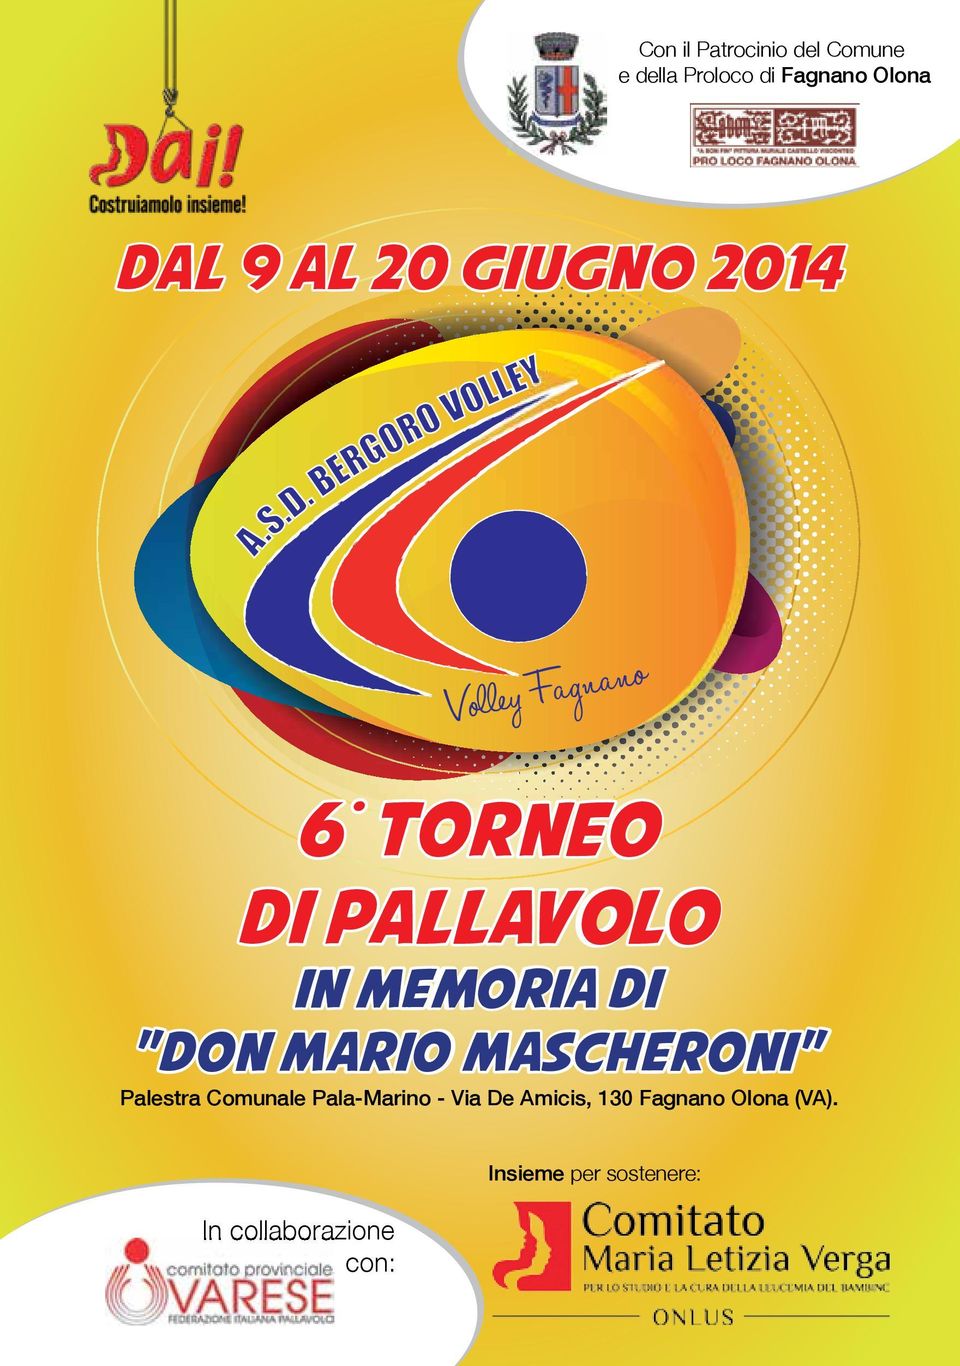 BERGORO VOLLEY Volley Fagnano 6 TORNEO DI PALLAVOLO IN MEMORIA DI "DON